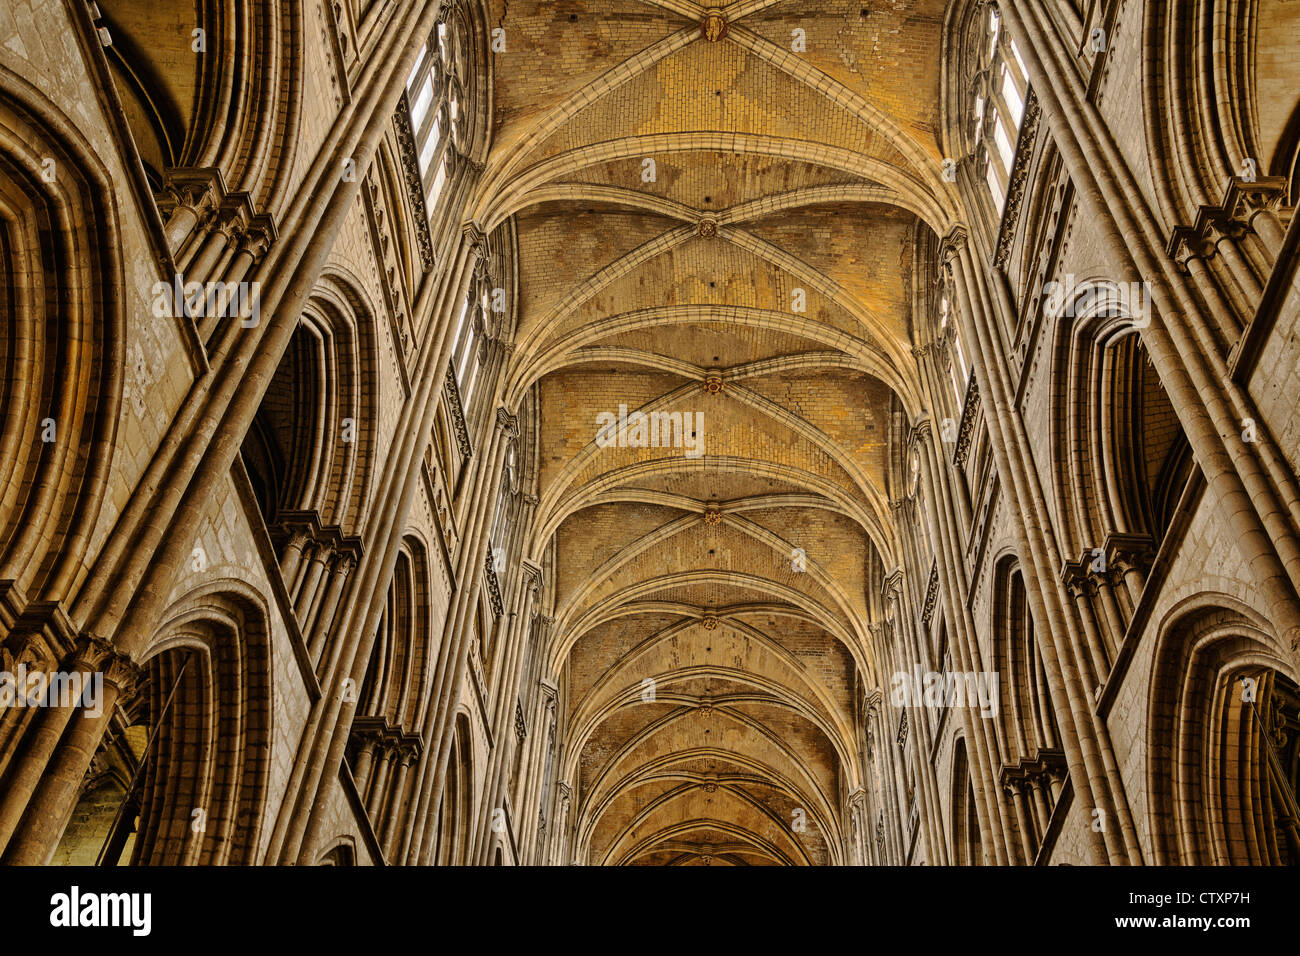 Plafond de nef dans la Cathédrale de Rouen, Normandie, France Banque D'Images